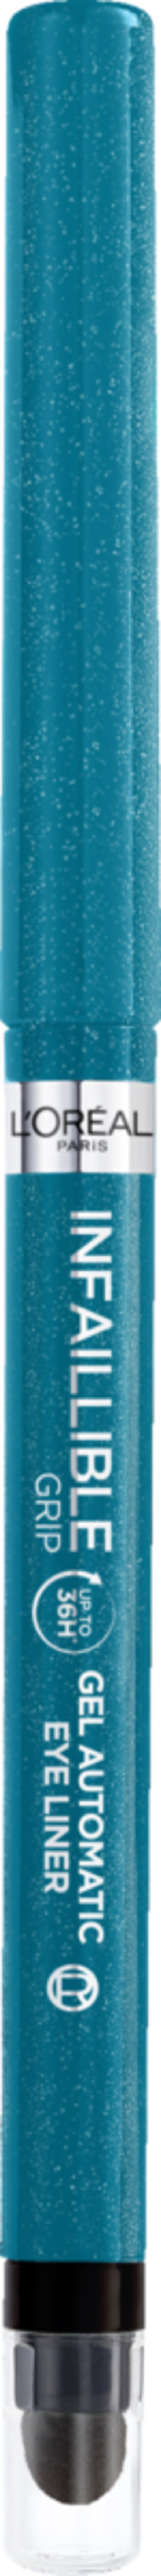 Bild 1 von L’Oréal Paris Infallible Automatic Grip Eyeliner Turquoise